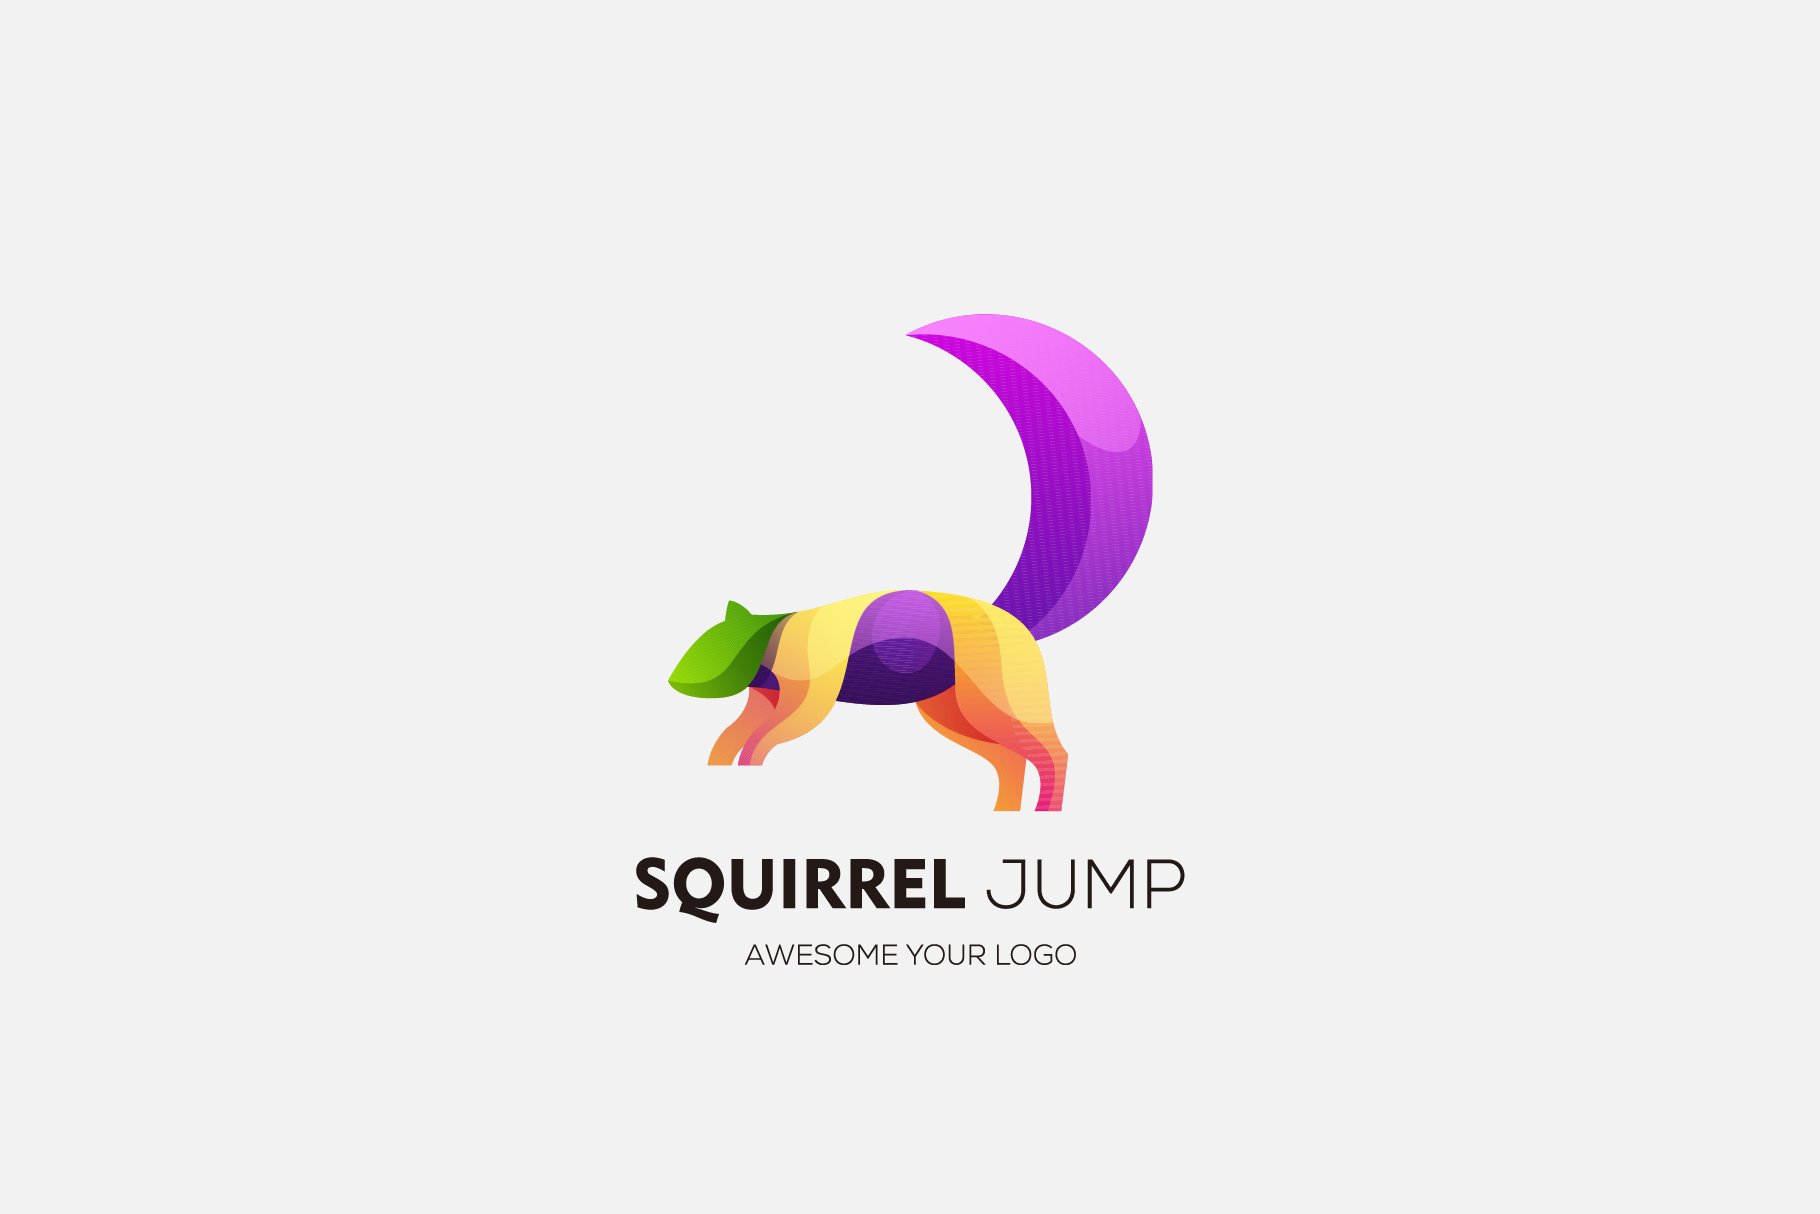 squirrel jump design gradient color cover image.